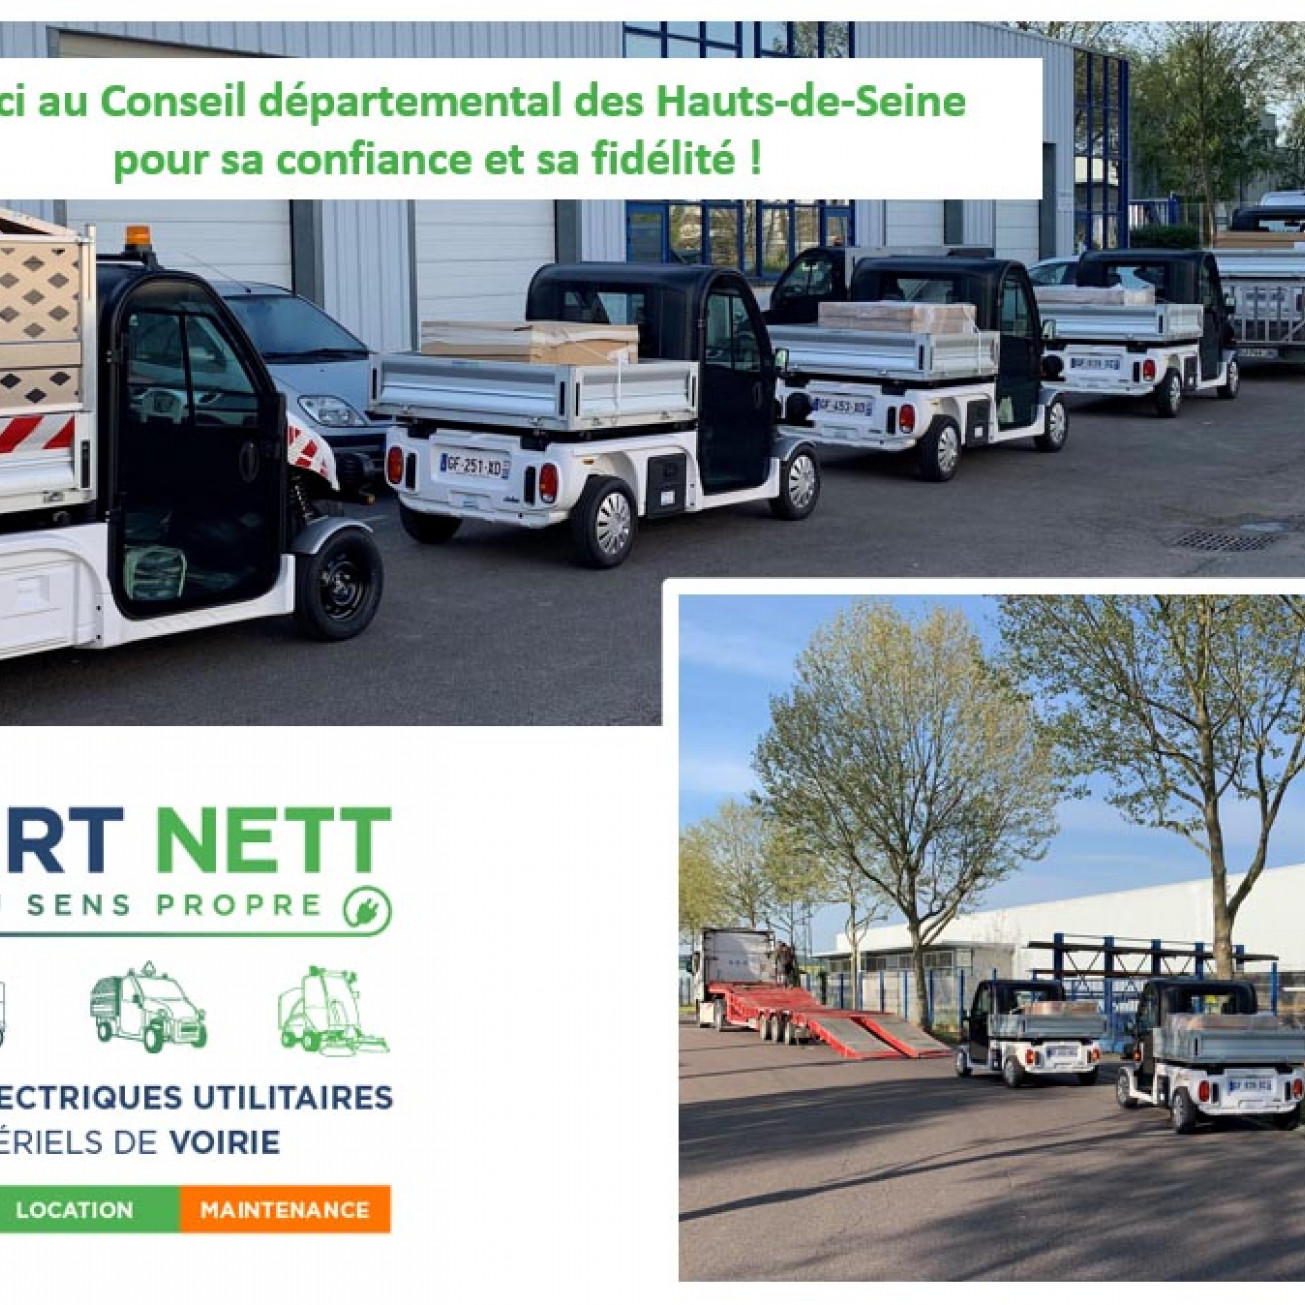 EXPERT NETT livre 4 véhicules électriques utilitaires Pulse 4 de Ligier au Conseil départemental des Hauts-de-Seine